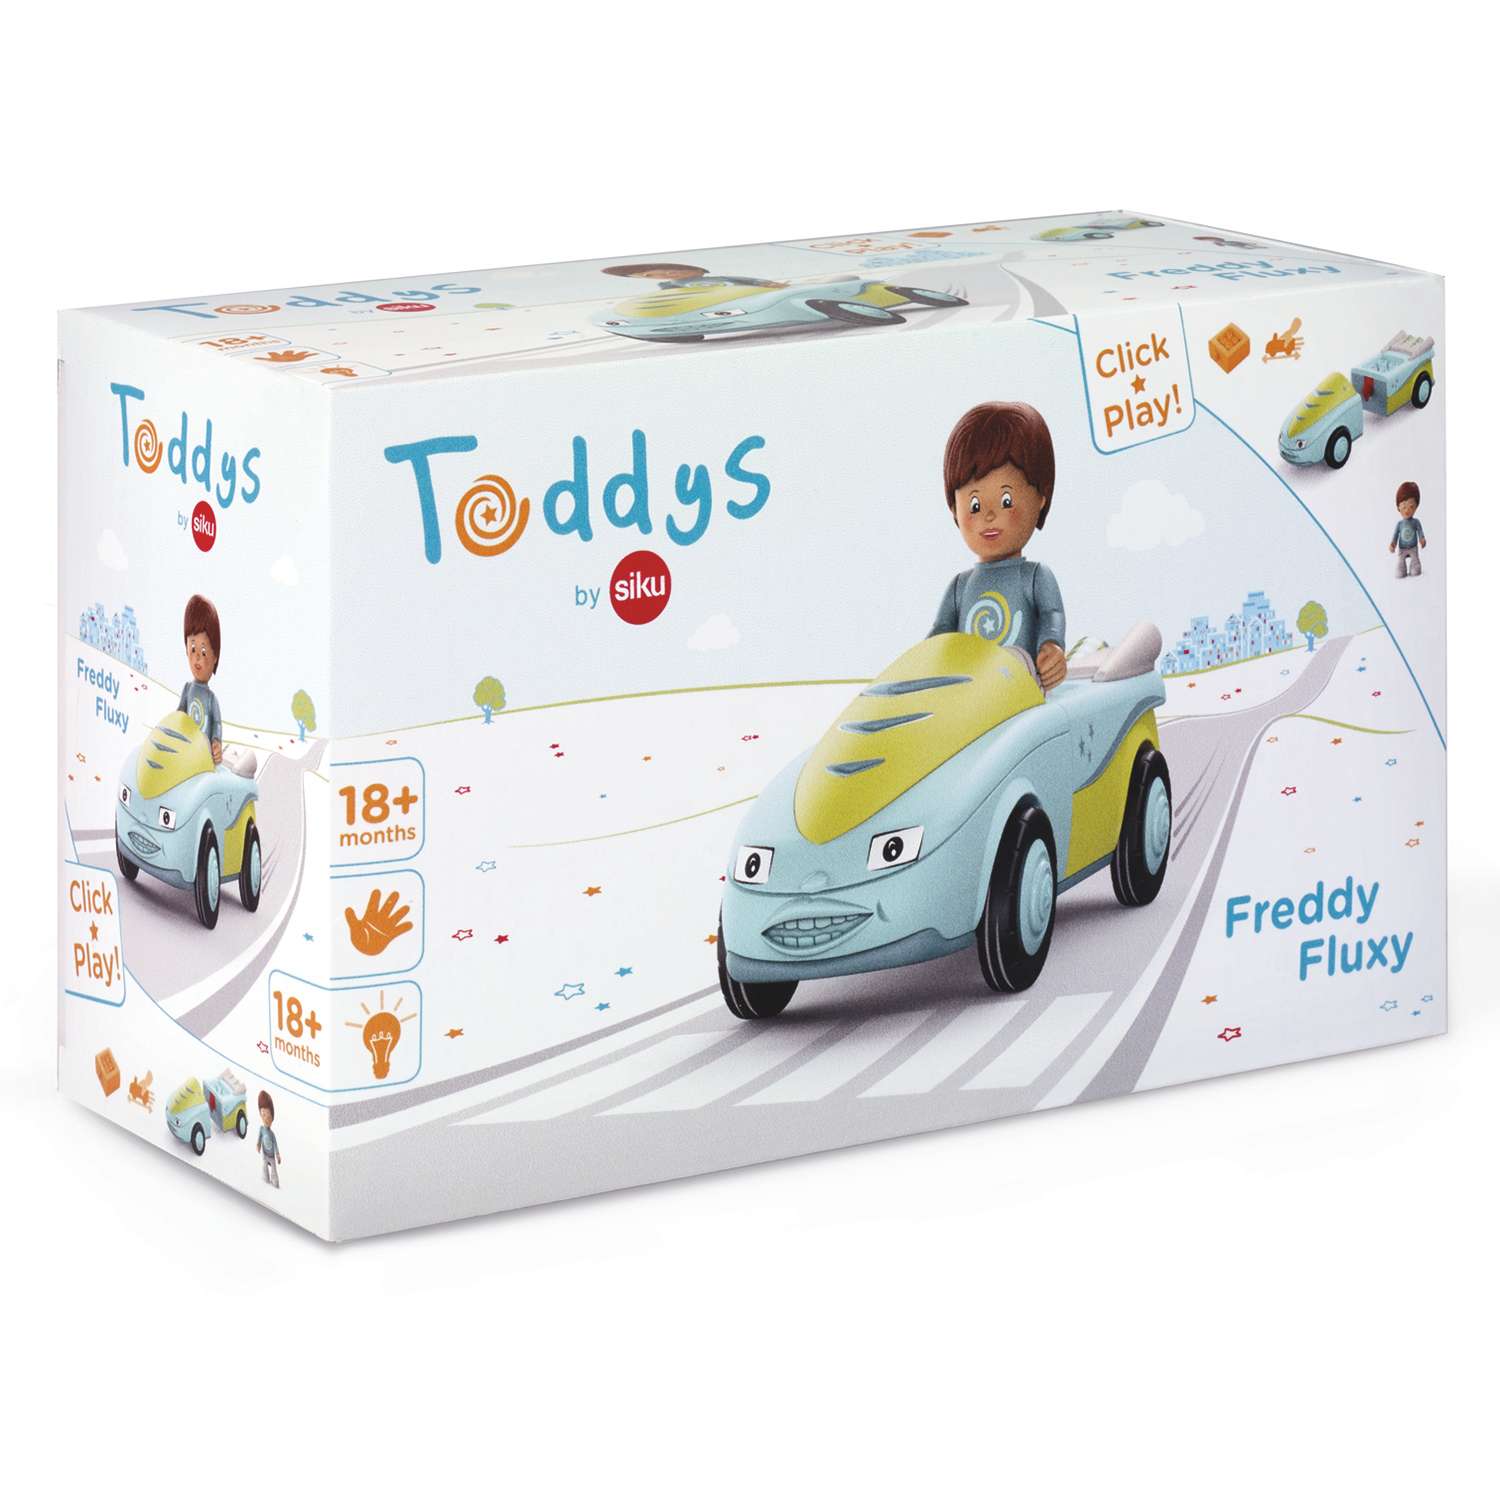 Игрушка Toddys by Siku Фредди и Флукси 0101 - фото 10